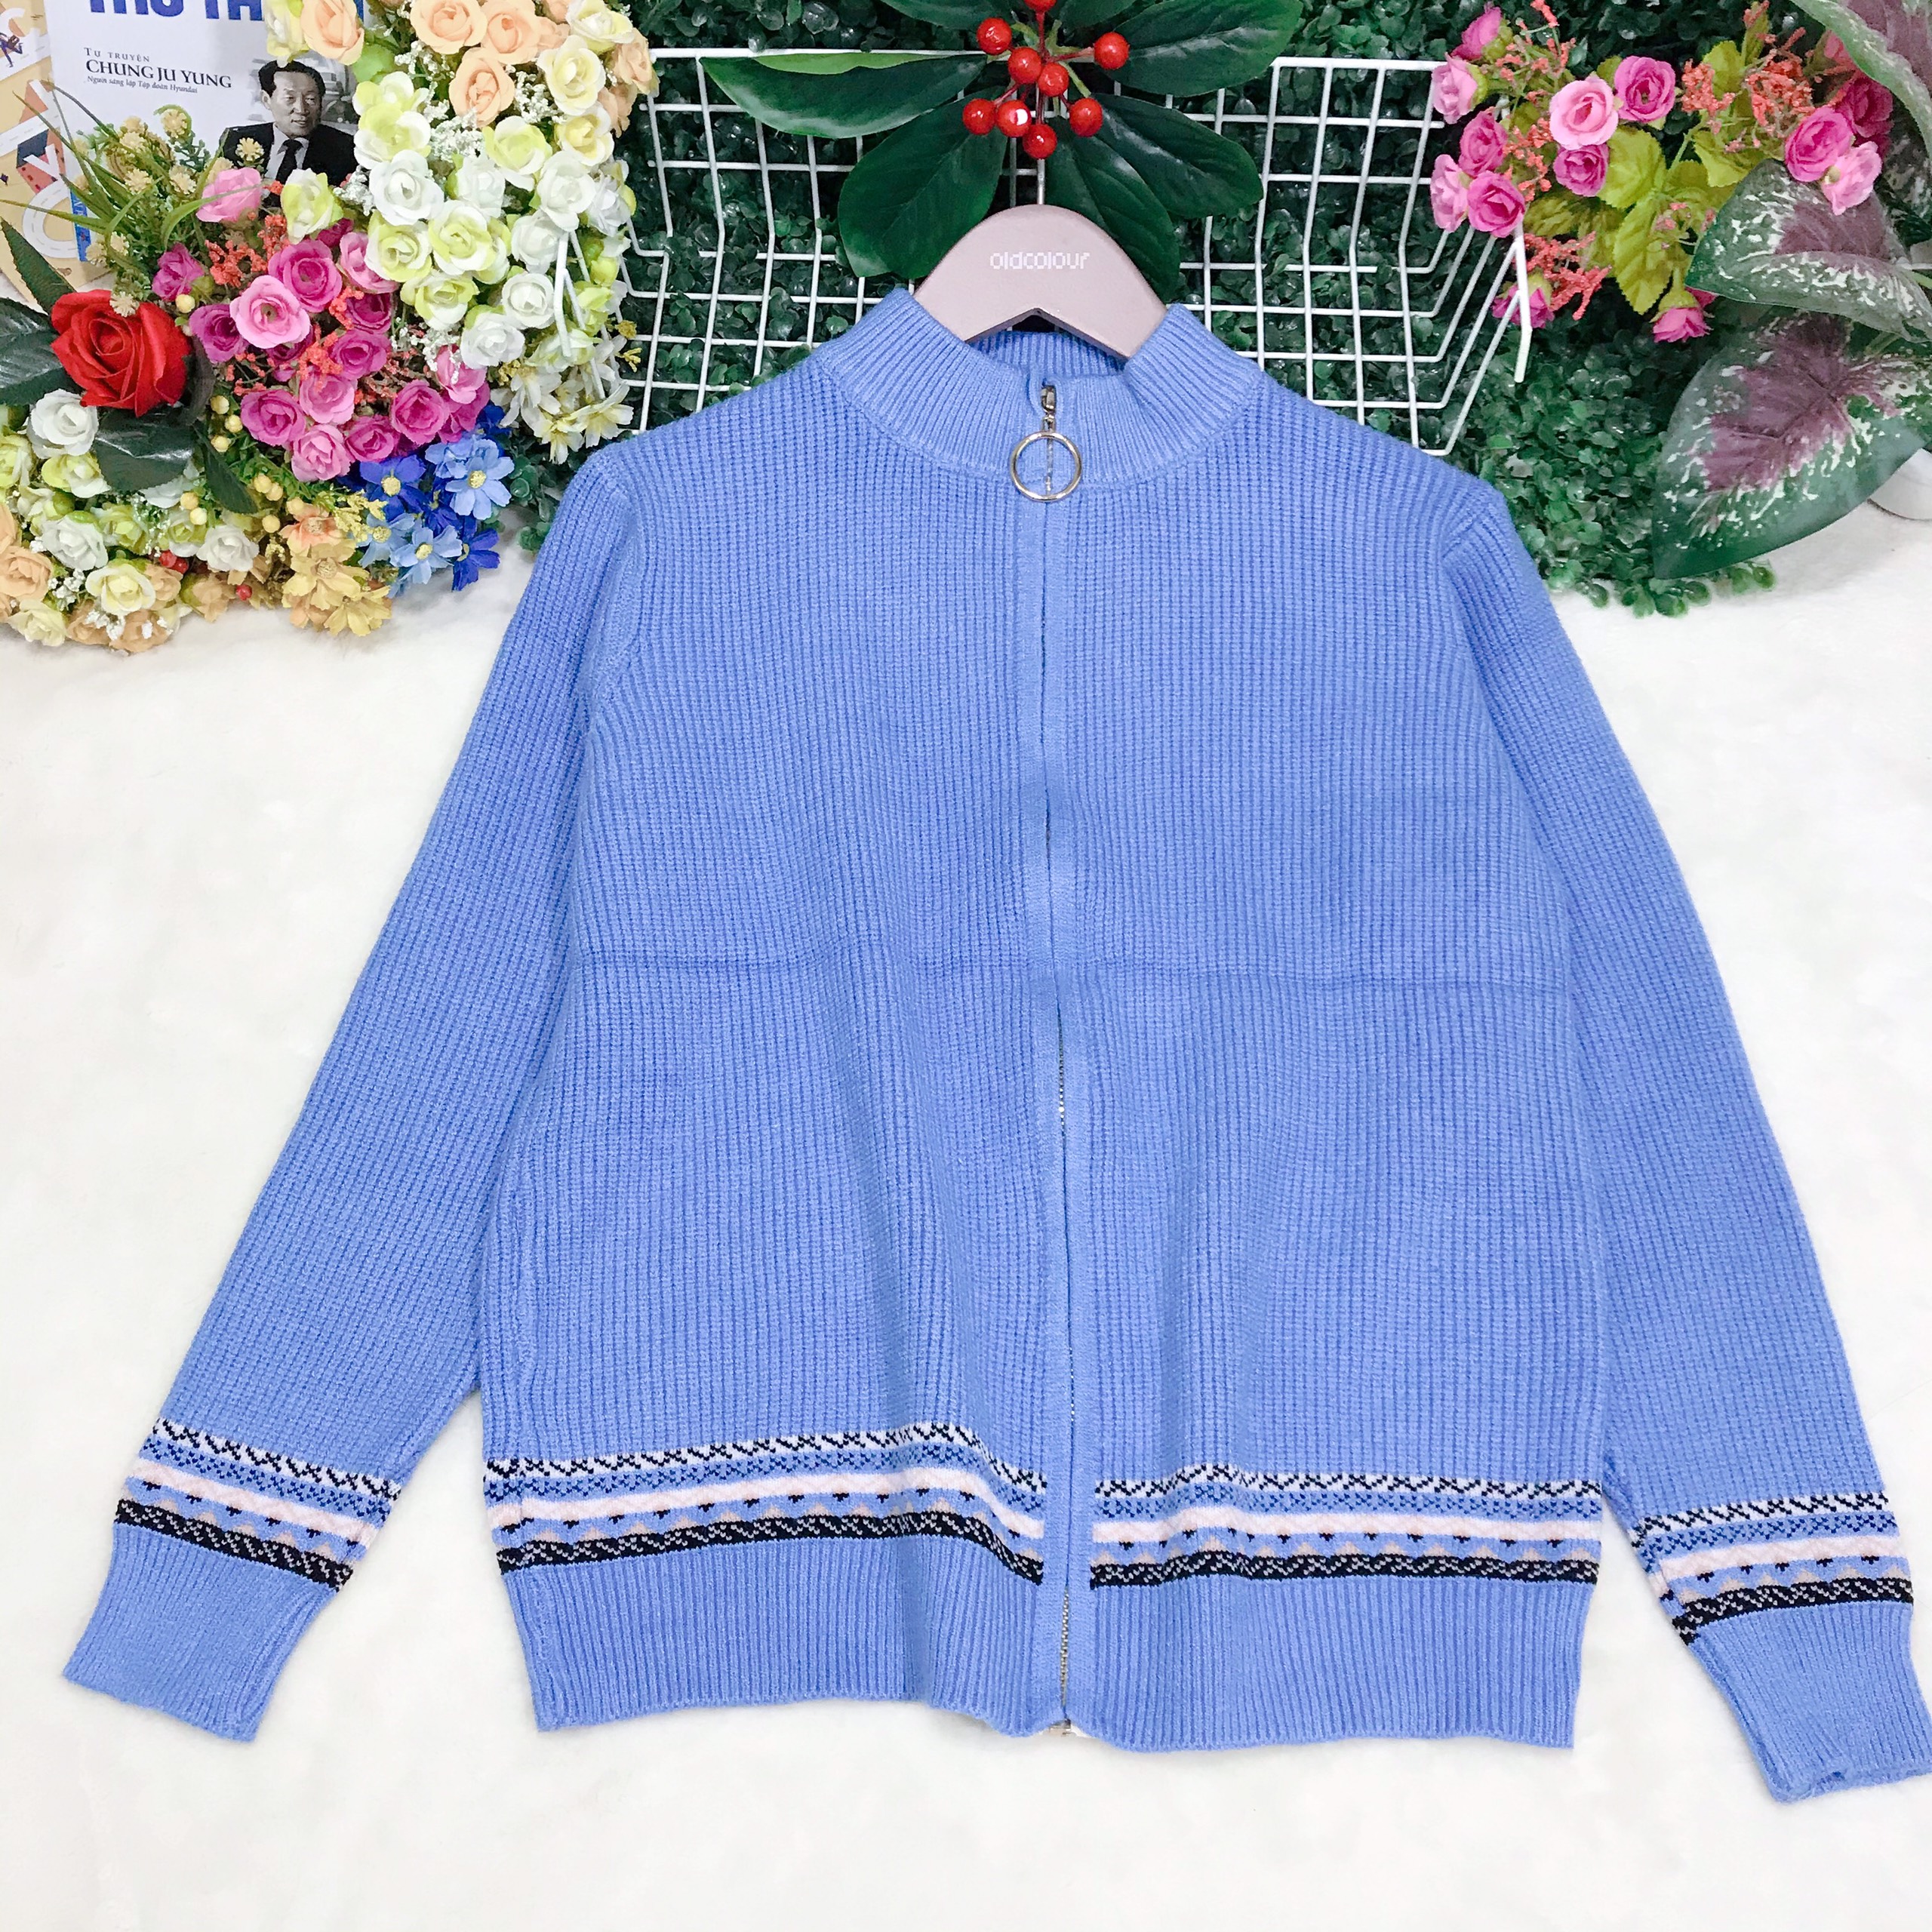 Áo khoác len nữ cardigan họa tiết thổ cẩm kéo khóa siêu xinh - DL67182 - Hàng Quảng Châu